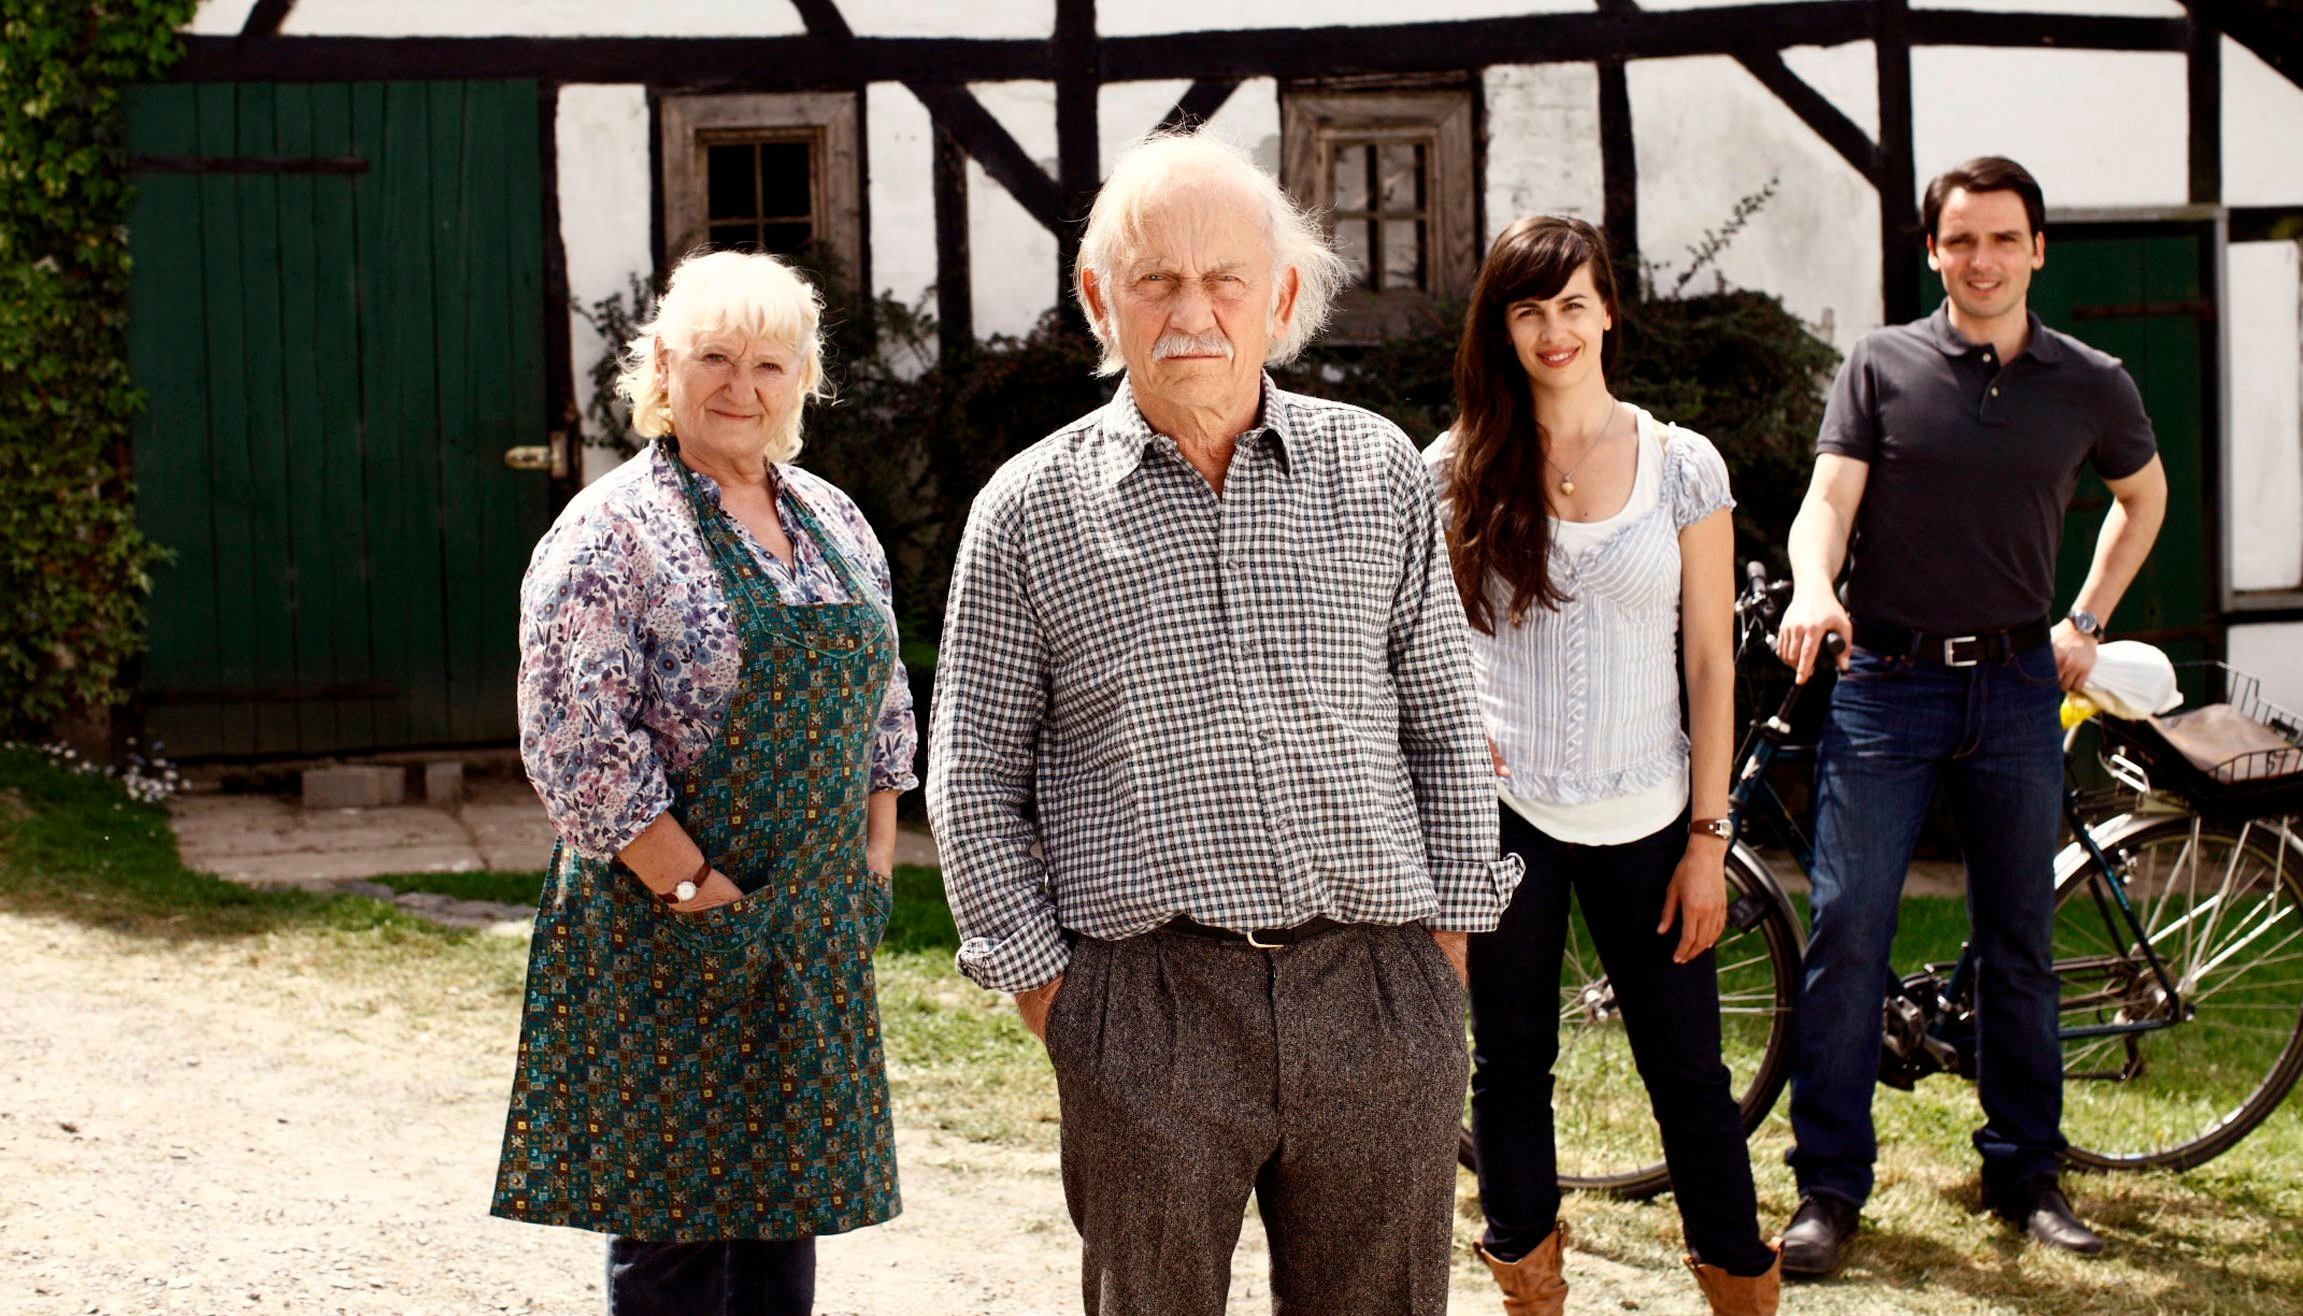 Carmen-Maja Antoni, Tilo Prückner, Julia-Maria Köhler und Sascha Göpel (v.l.n.r.) in "Holger sacht nix" - 